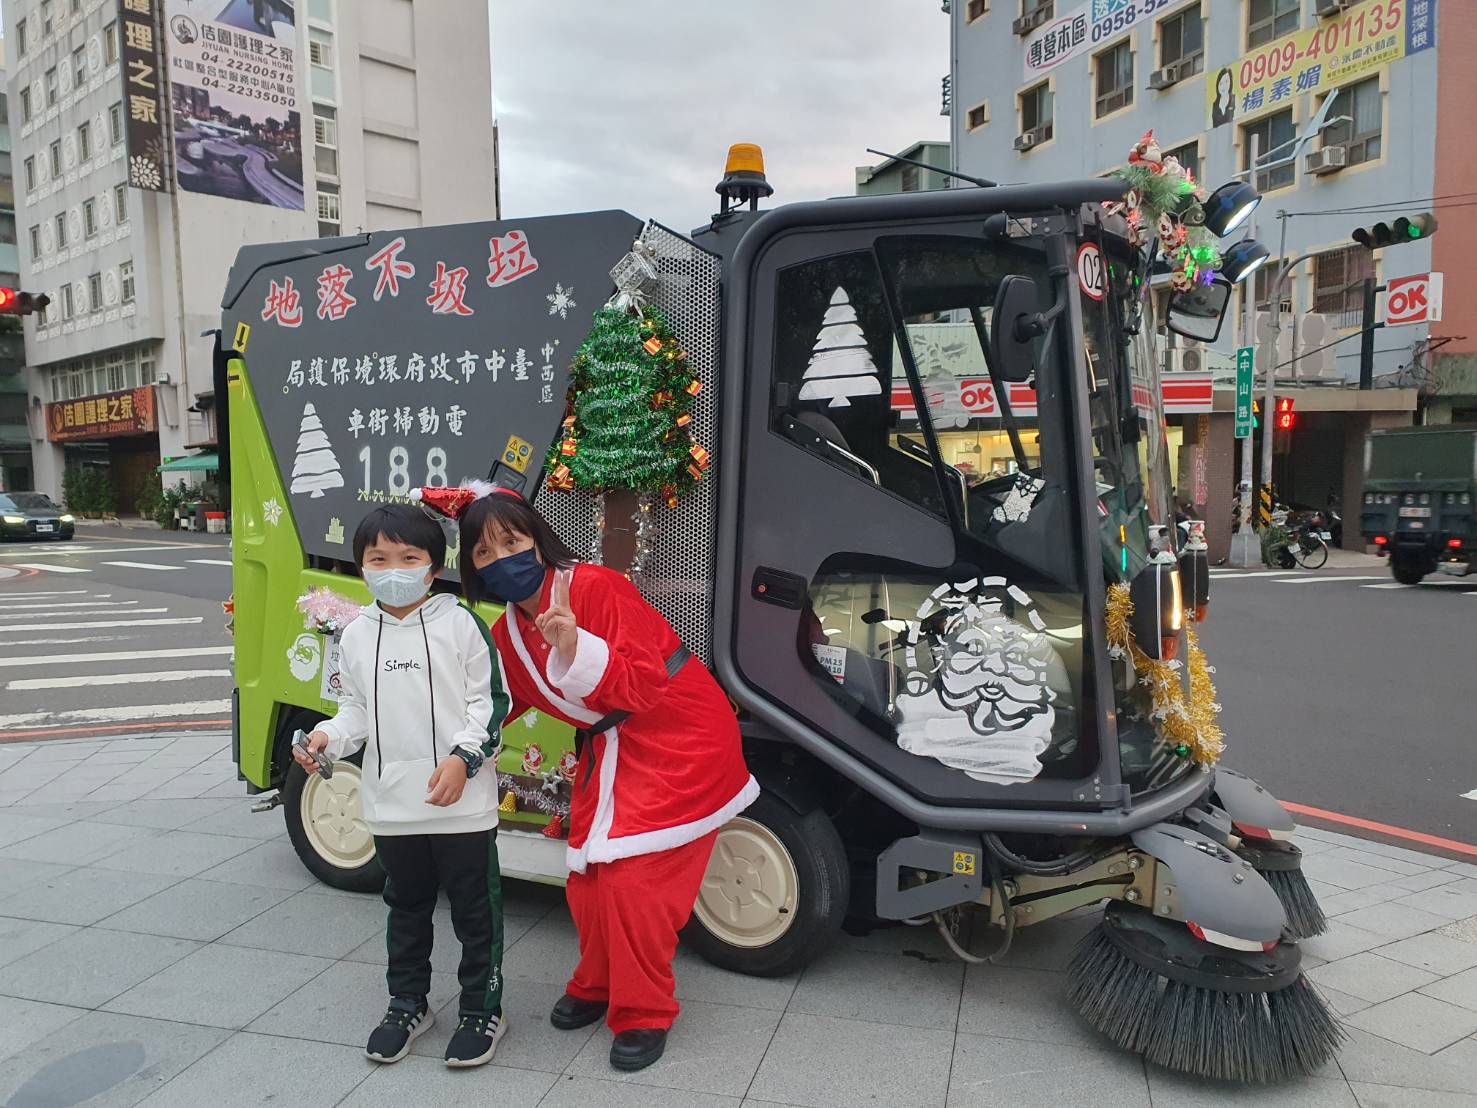 耶誕美魔女駕電動掃街車出勤 中市清潔隊扮耶誕老人成拍照人形立牌